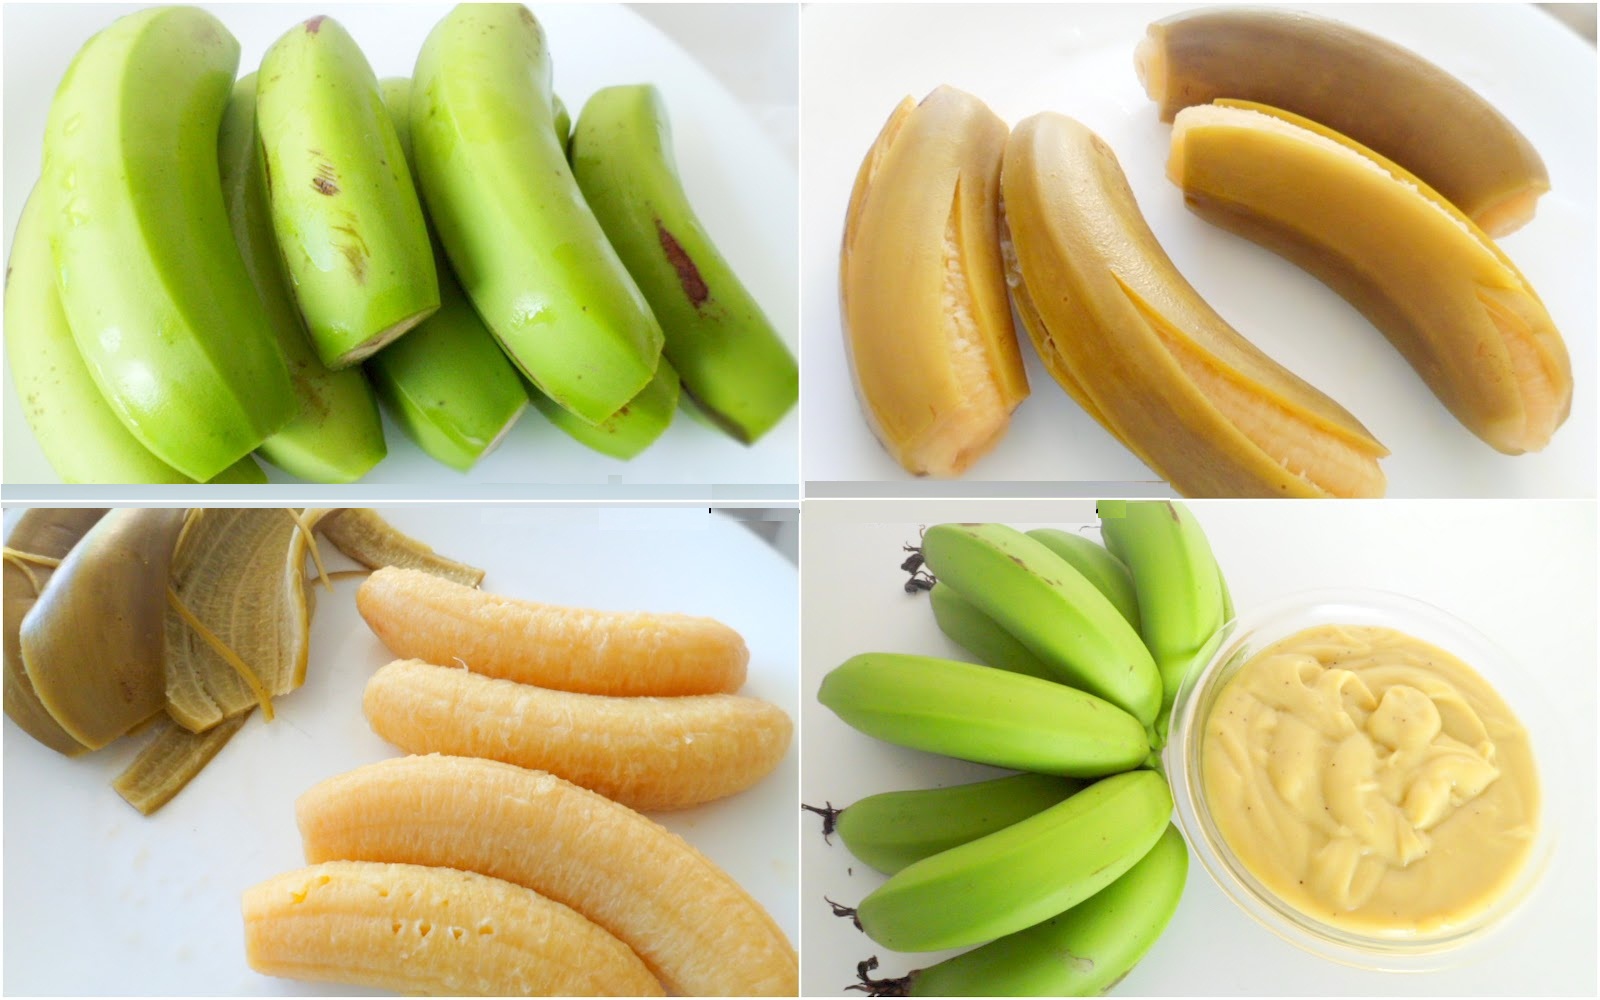 Pasta de banana verde ajuda emagrecer